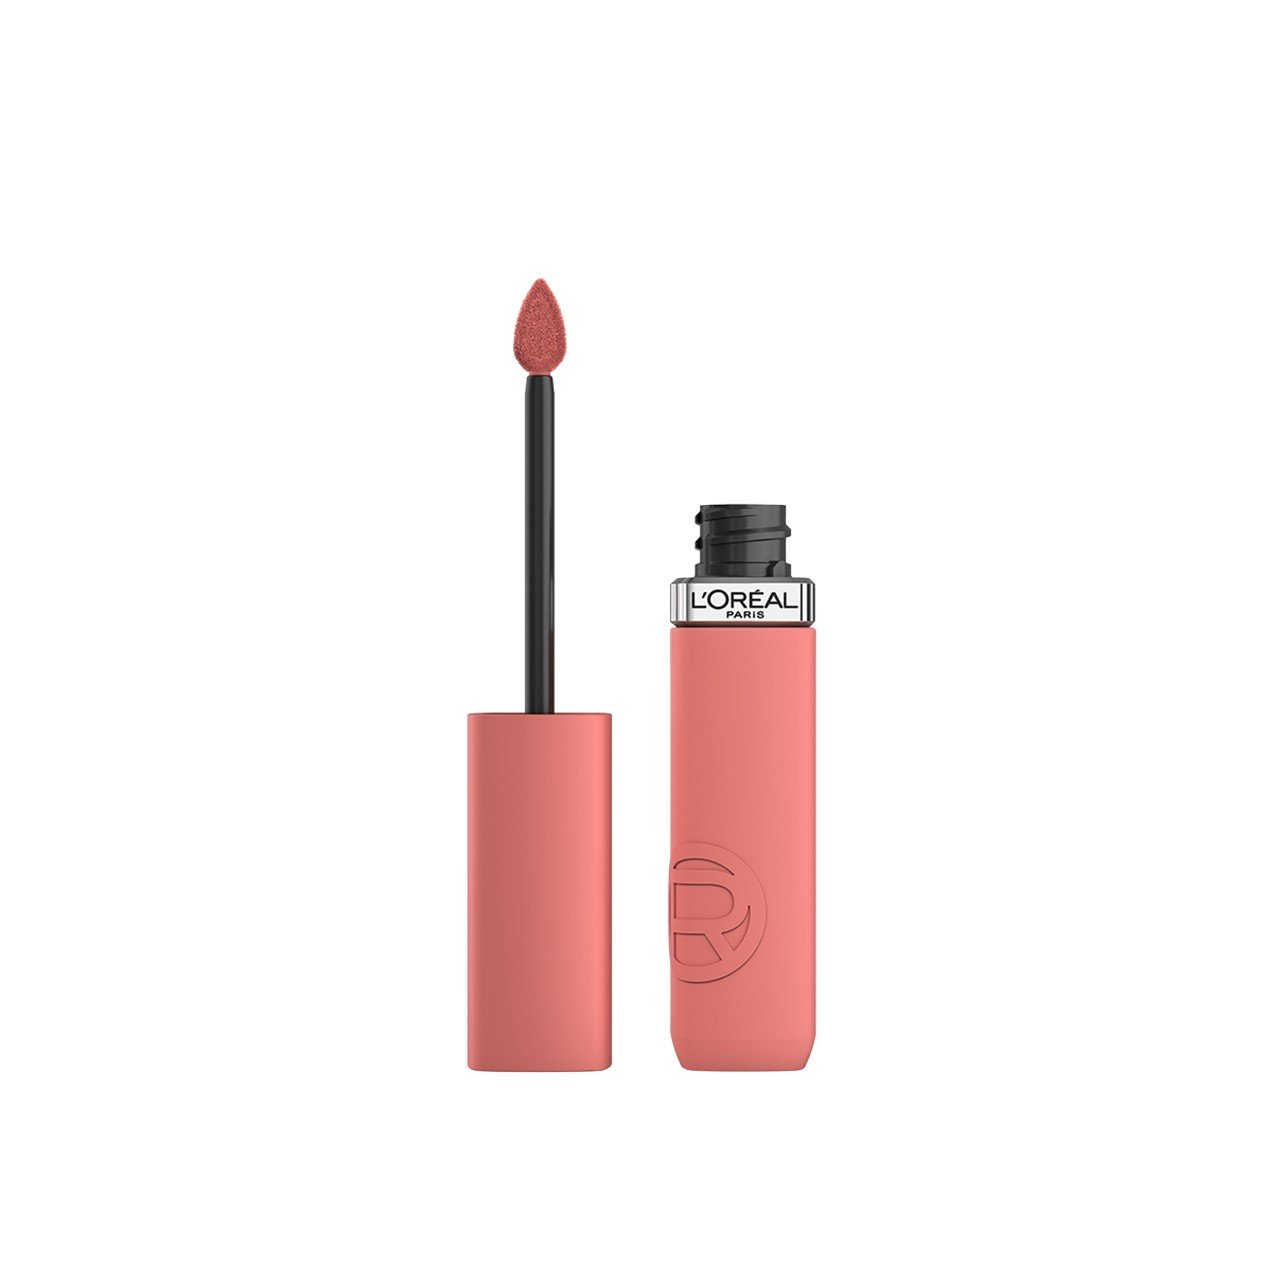 L'Oréal Paris Infallible Matte Resistance Liquid Lipstick 210 Tropical Vacay 5ml